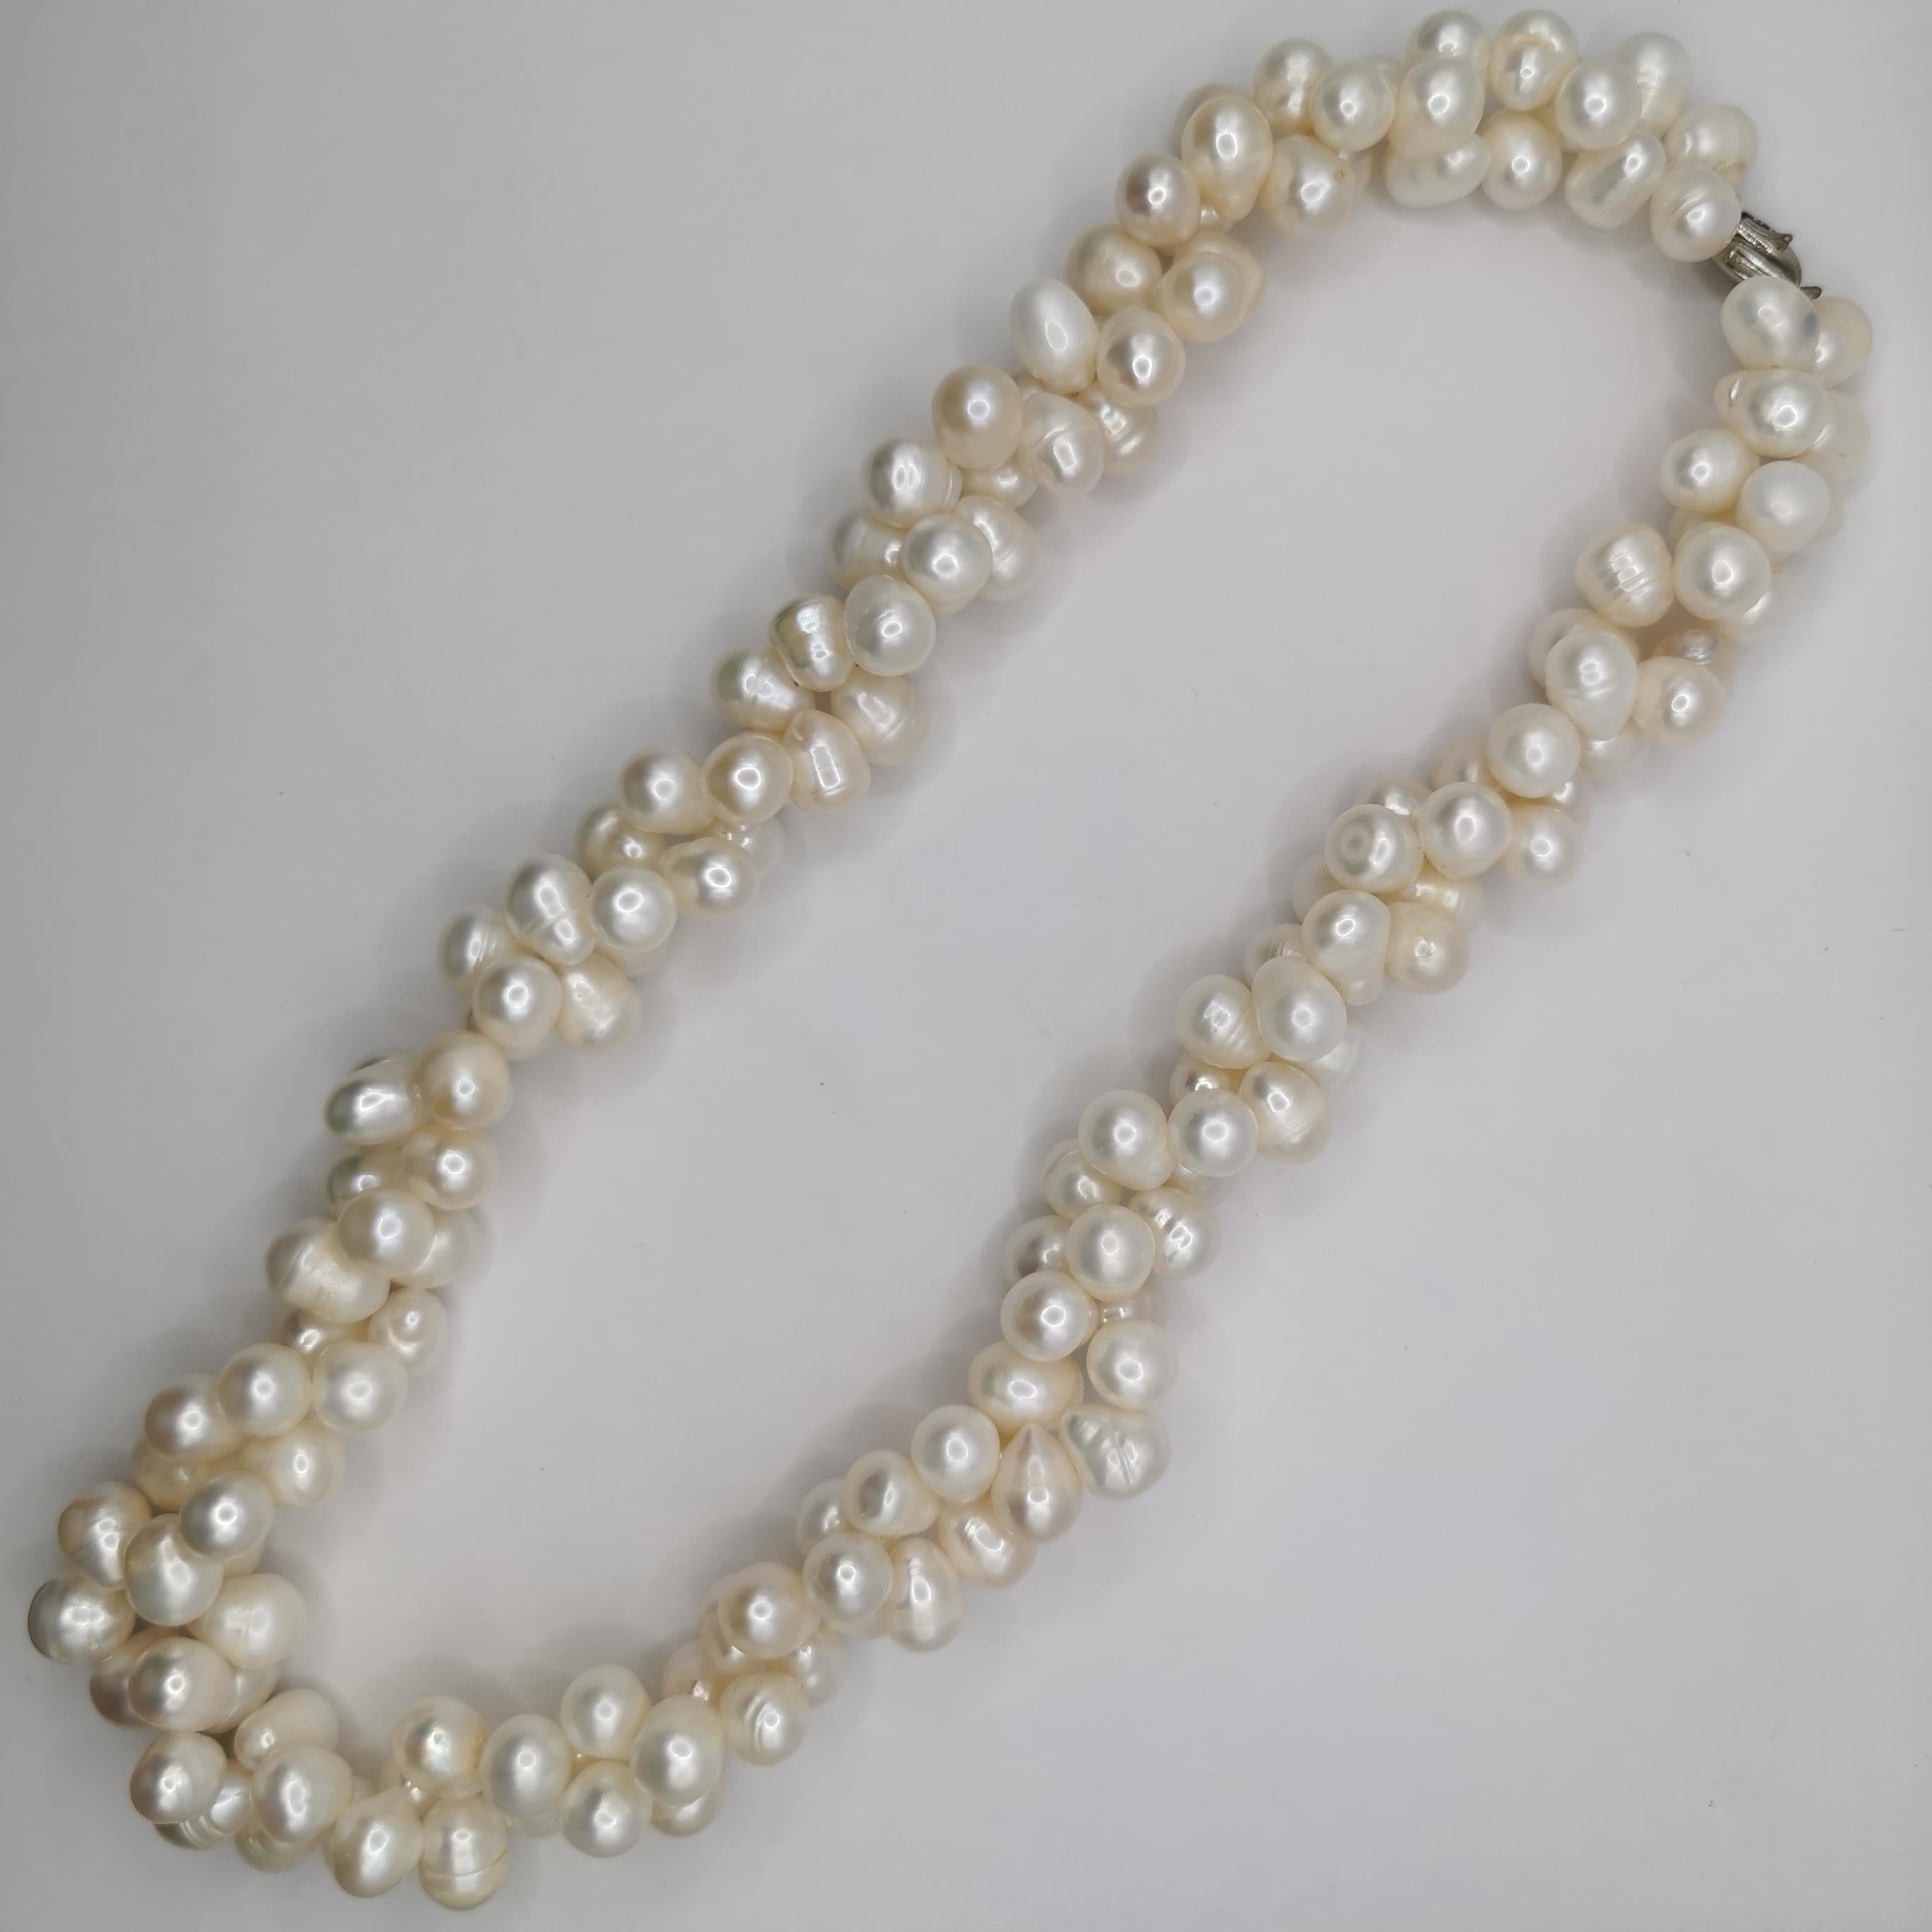 Ce collier de perles blanches baroques de culture d'eau douce à double torsion est une pièce magnifique et élégante qui ne manquera pas d'impressionner. Le collier présente un design unique, avec deux brins torsadés de perles blanches baroques de